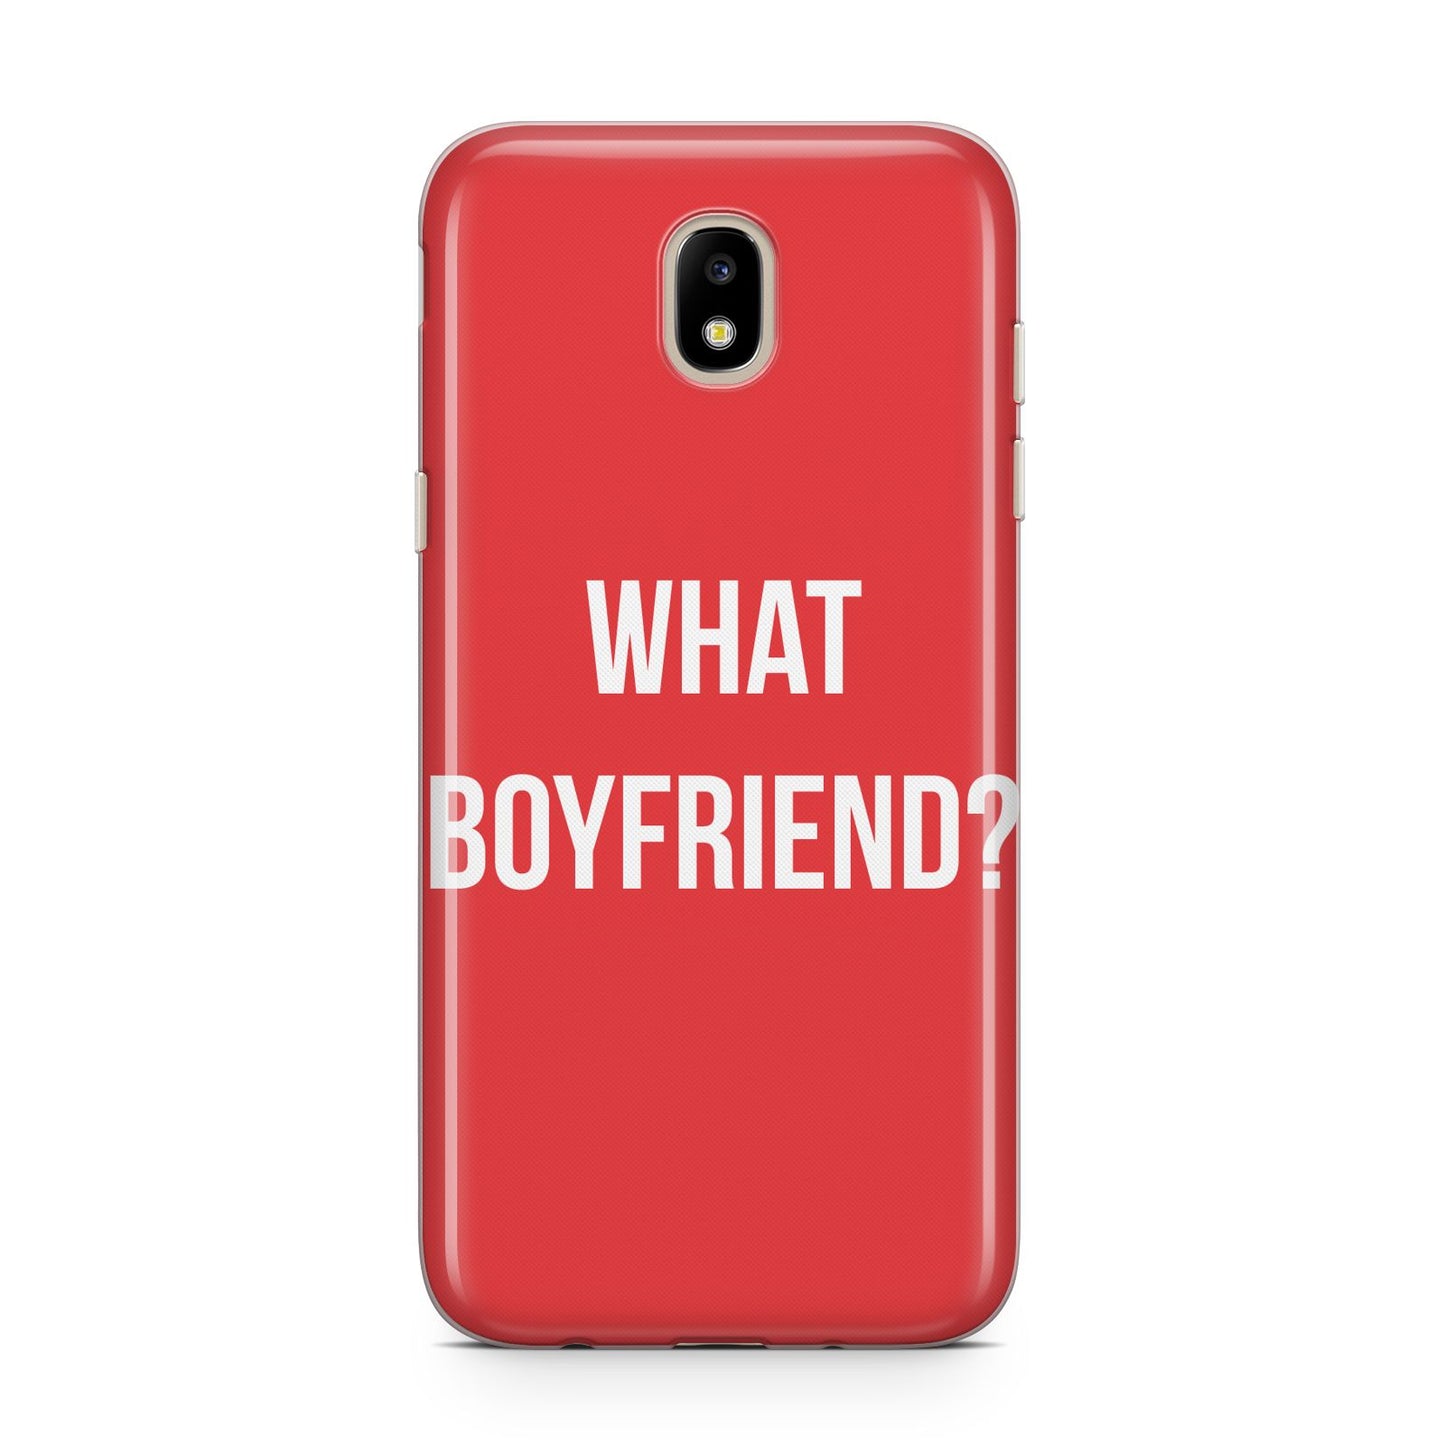 What Boyfriend Samsung J5 2017 Case